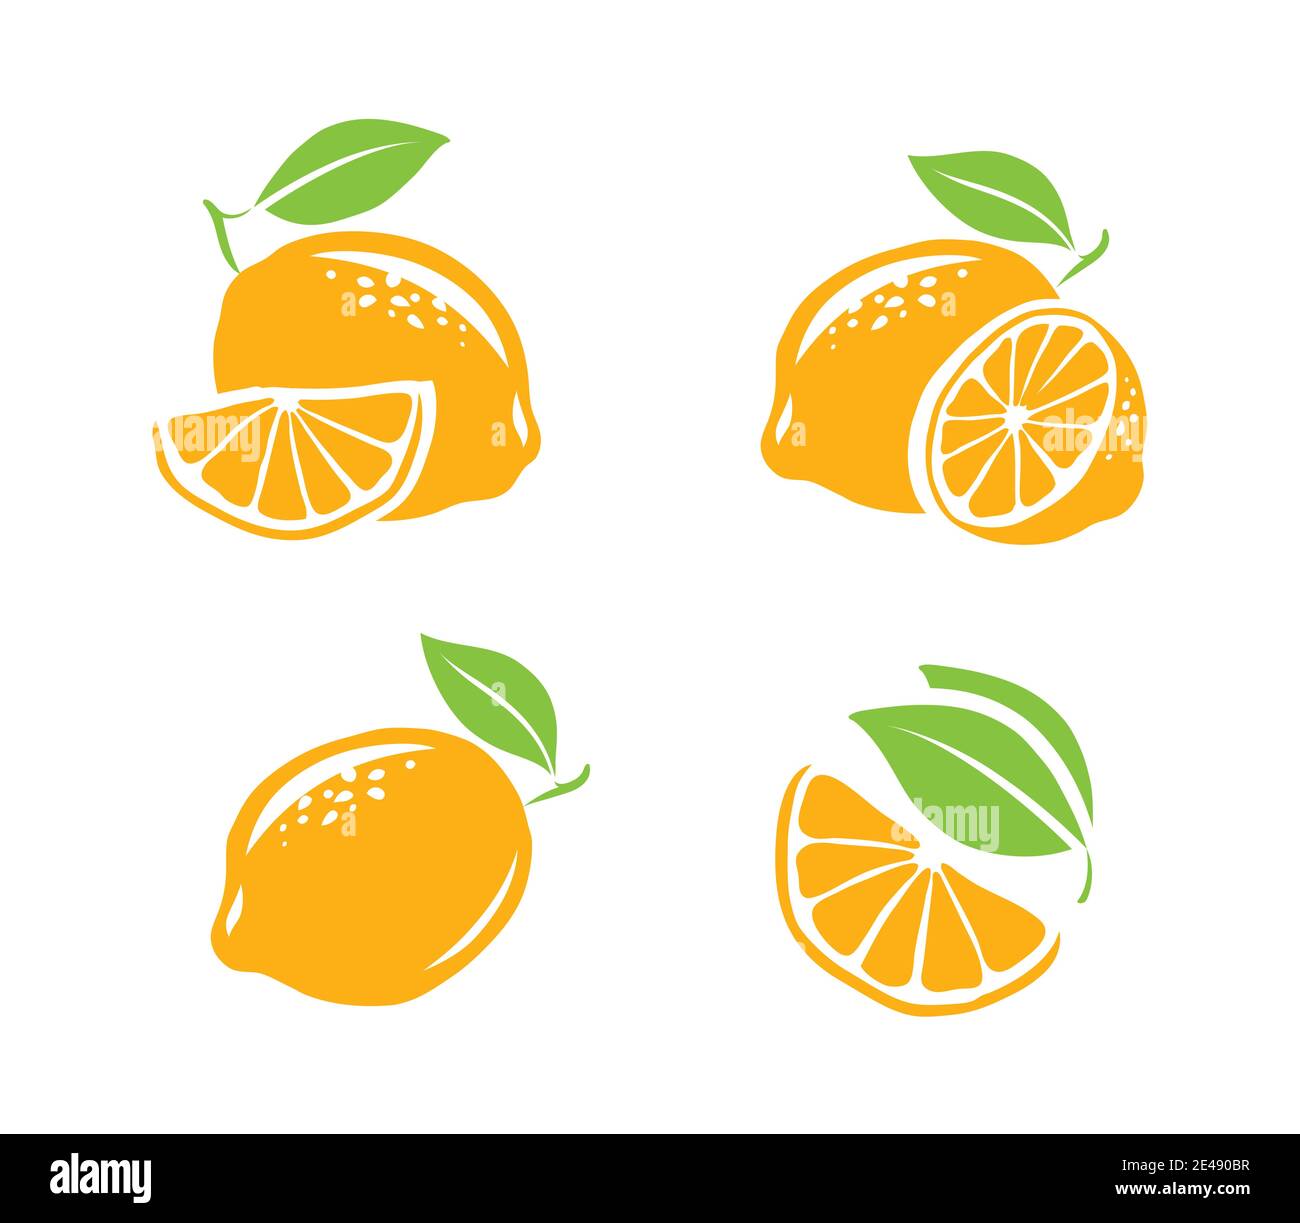 Zitronensymbol-Set. Vektor-Illustration für frische Früchte Stock Vektor